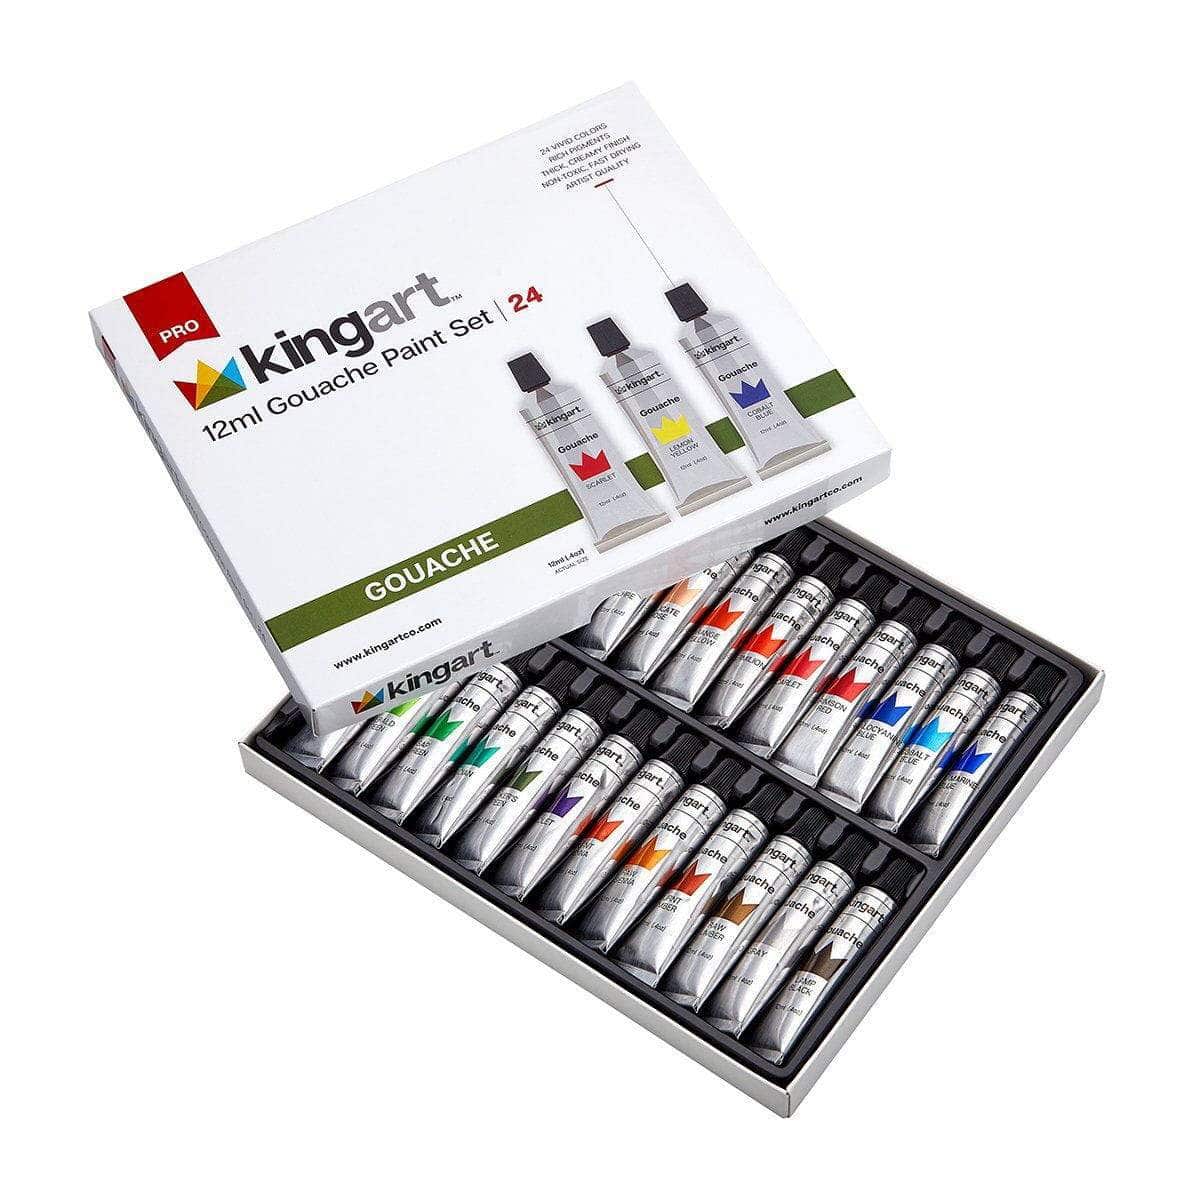 Versatile Non-Toxic Acrylic Paint Set - 14 Colors - Large Volume - Rich  Pigments